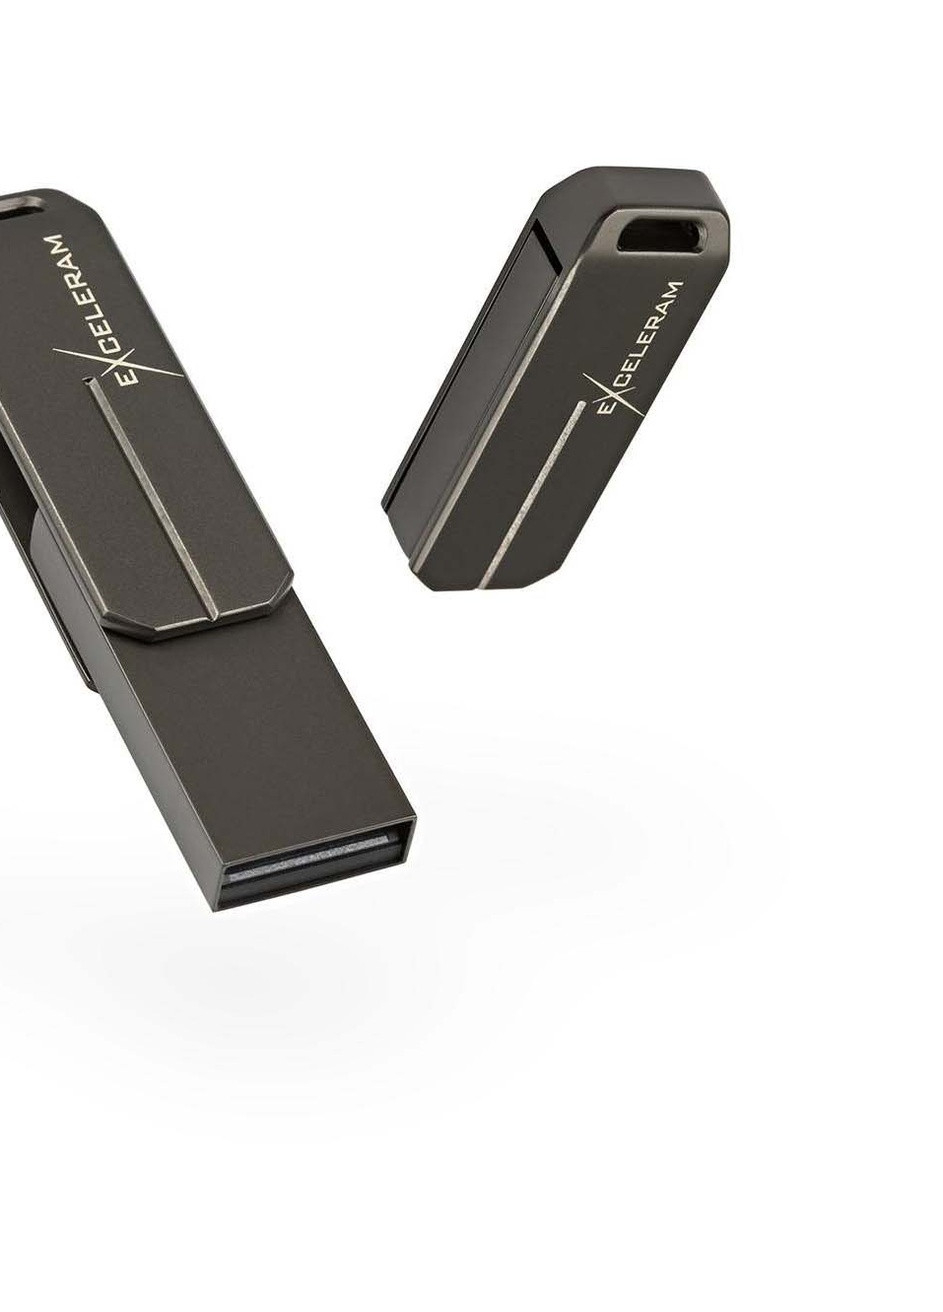 USB флеш накопичувач eXceleram (EXP2U2U3D32) Team 32gb u3 series dark usb 2.0 (232750181)